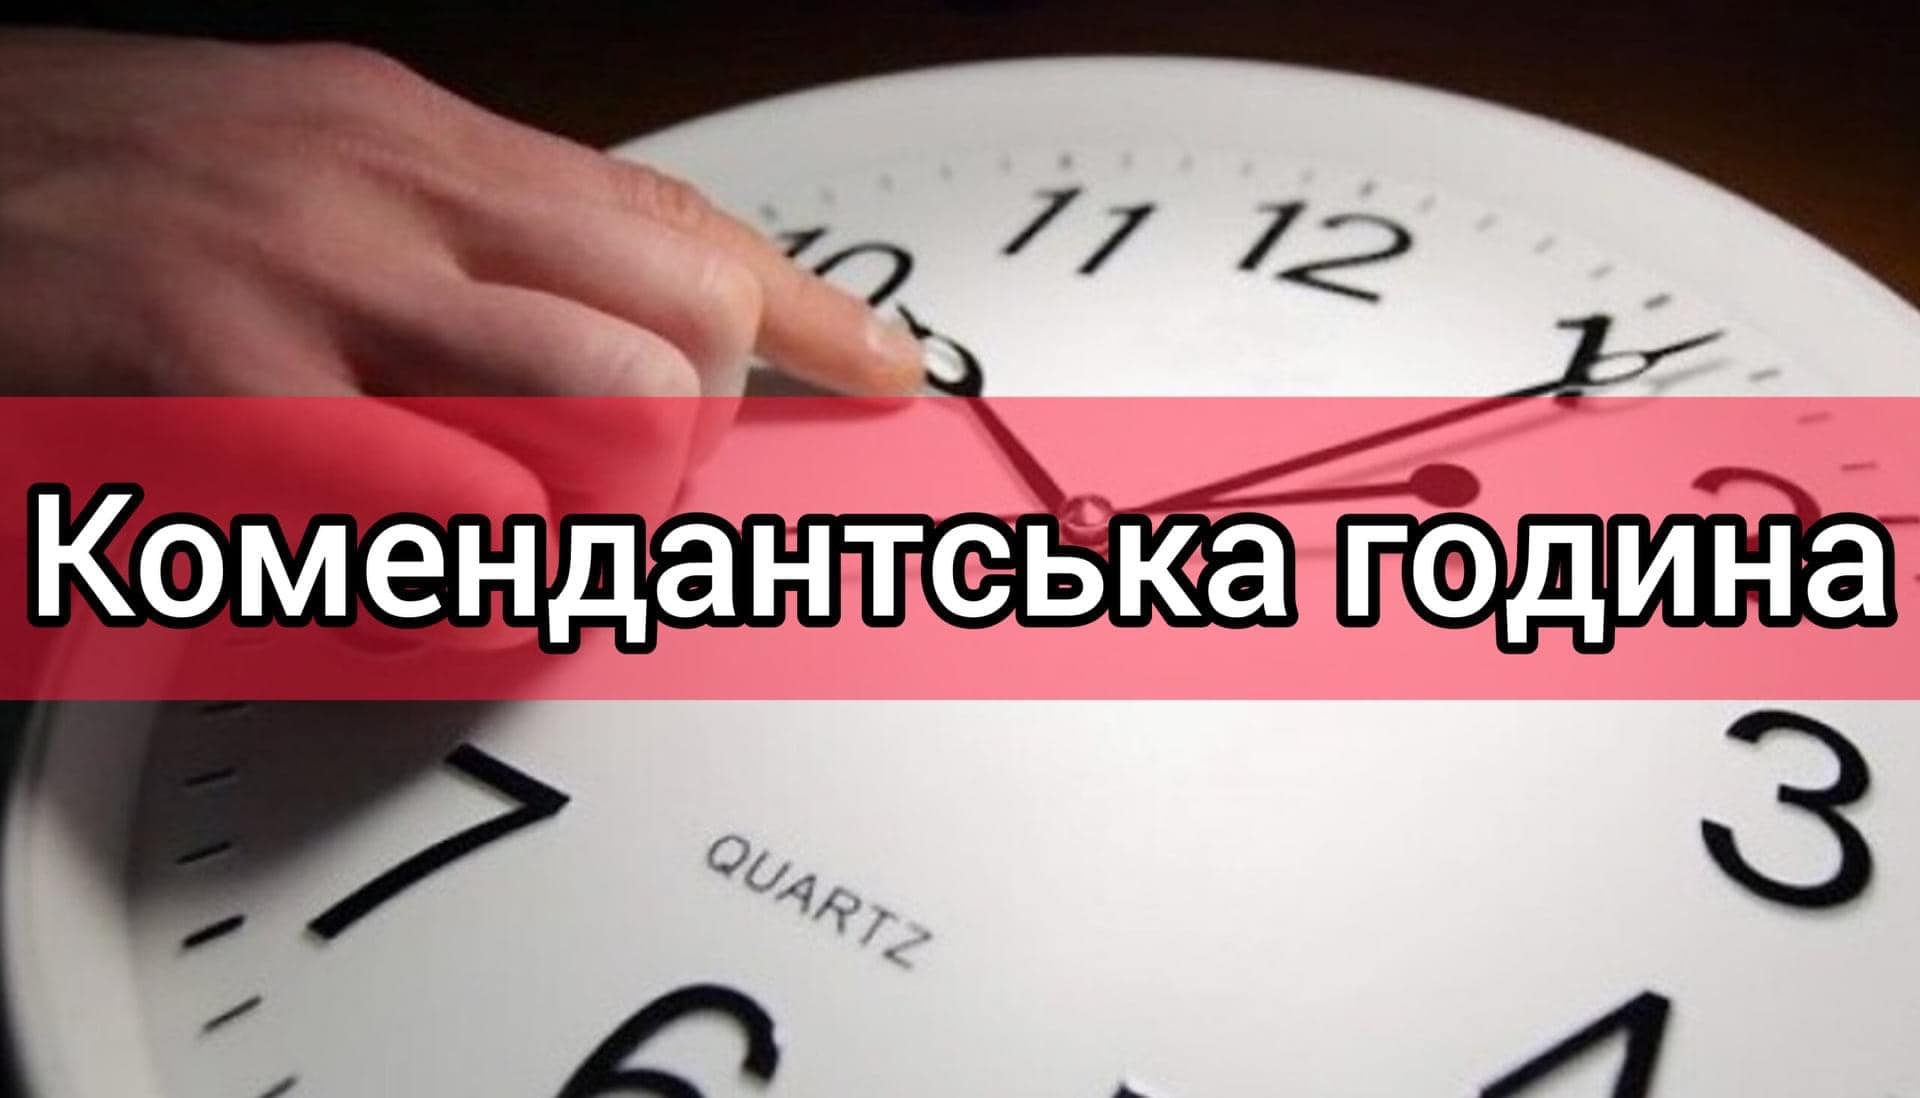 З 1 грудня комендантська година на Миколаївщині, окрім декількох громад, буде з 00:00 до 05:00 (ДОКУМЕНТ) 17